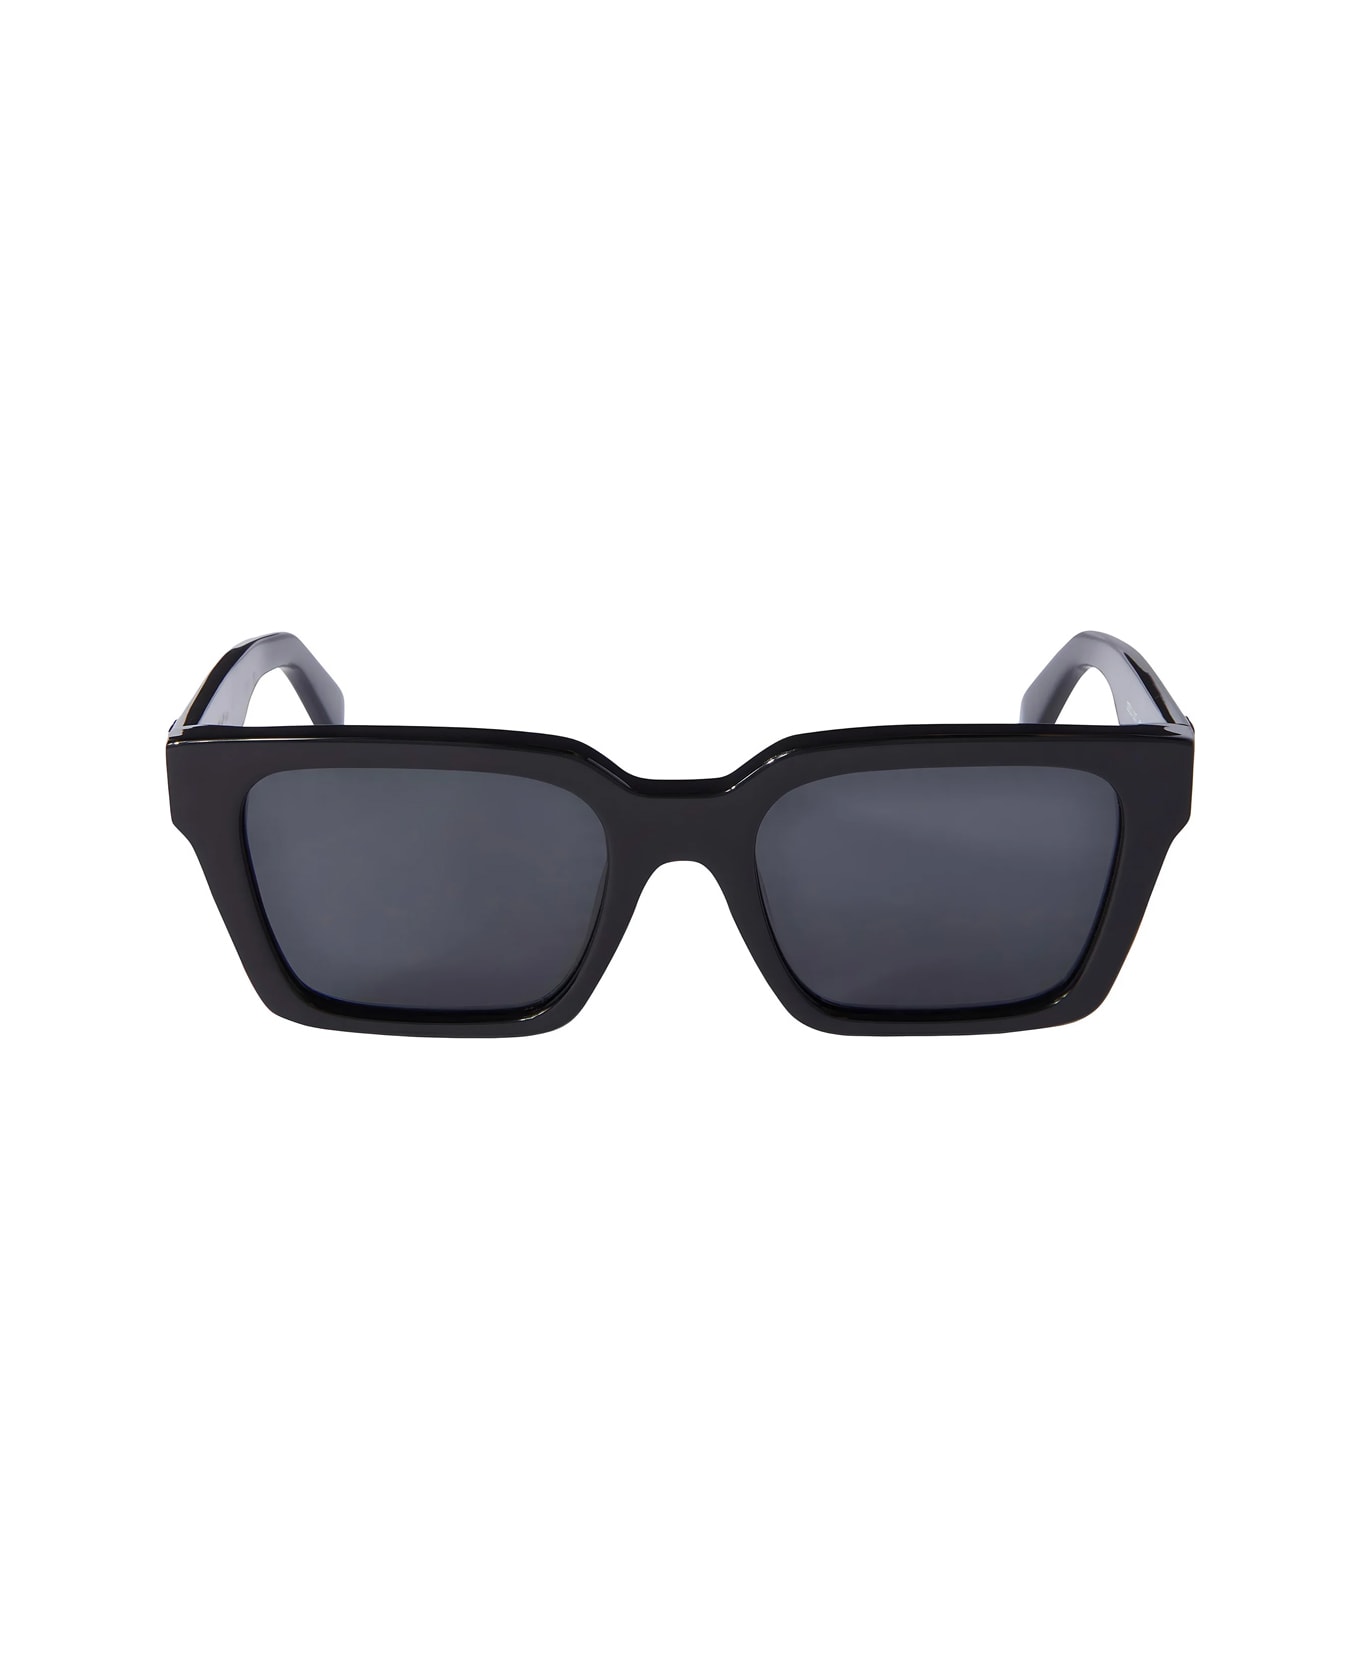 Off-White Oeri111 Branson 1007 Black Sunglasses - Nero